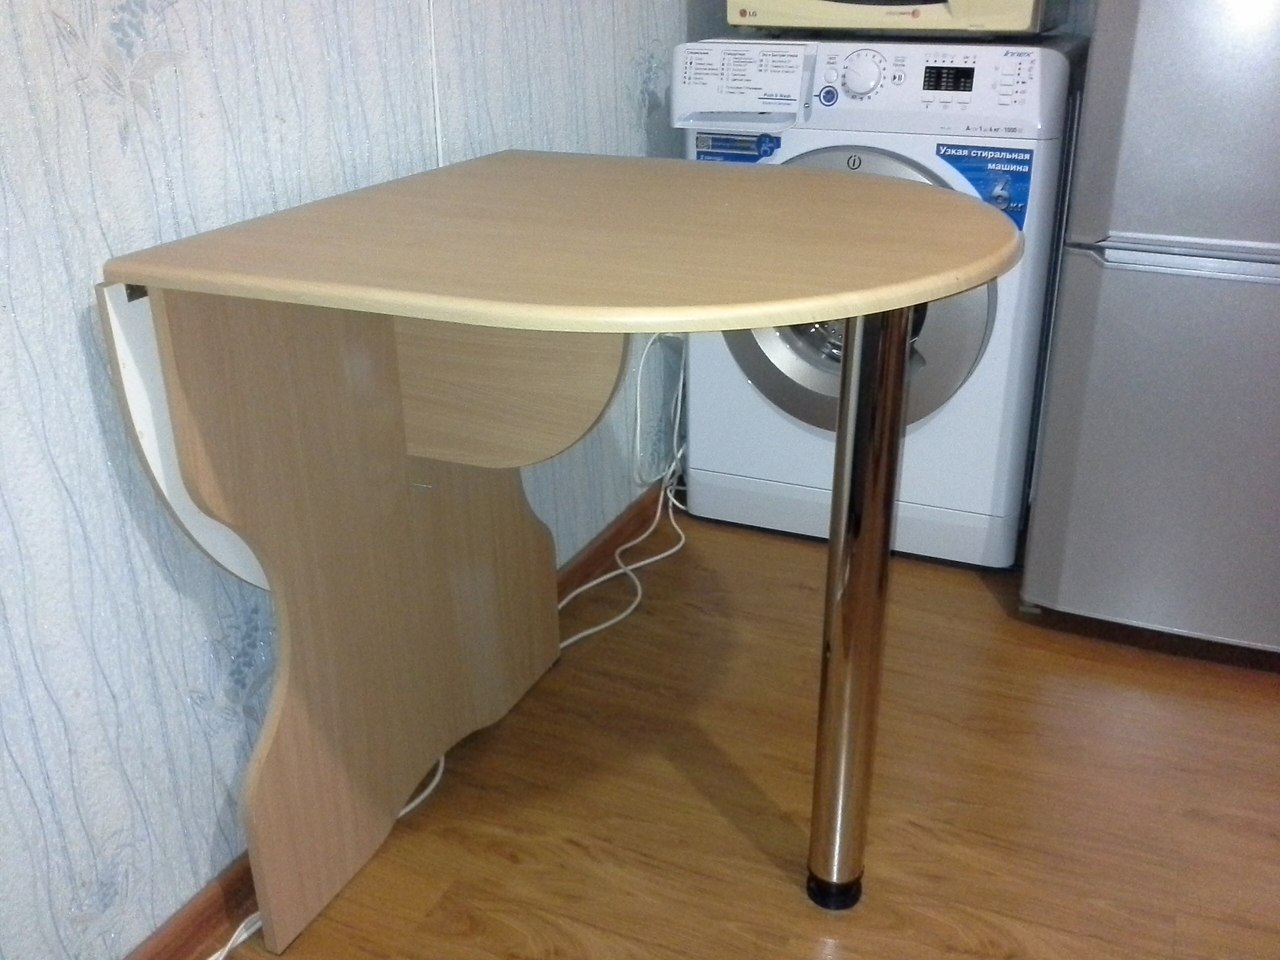 узкий кухонный стол для маленькой кухни 50 см